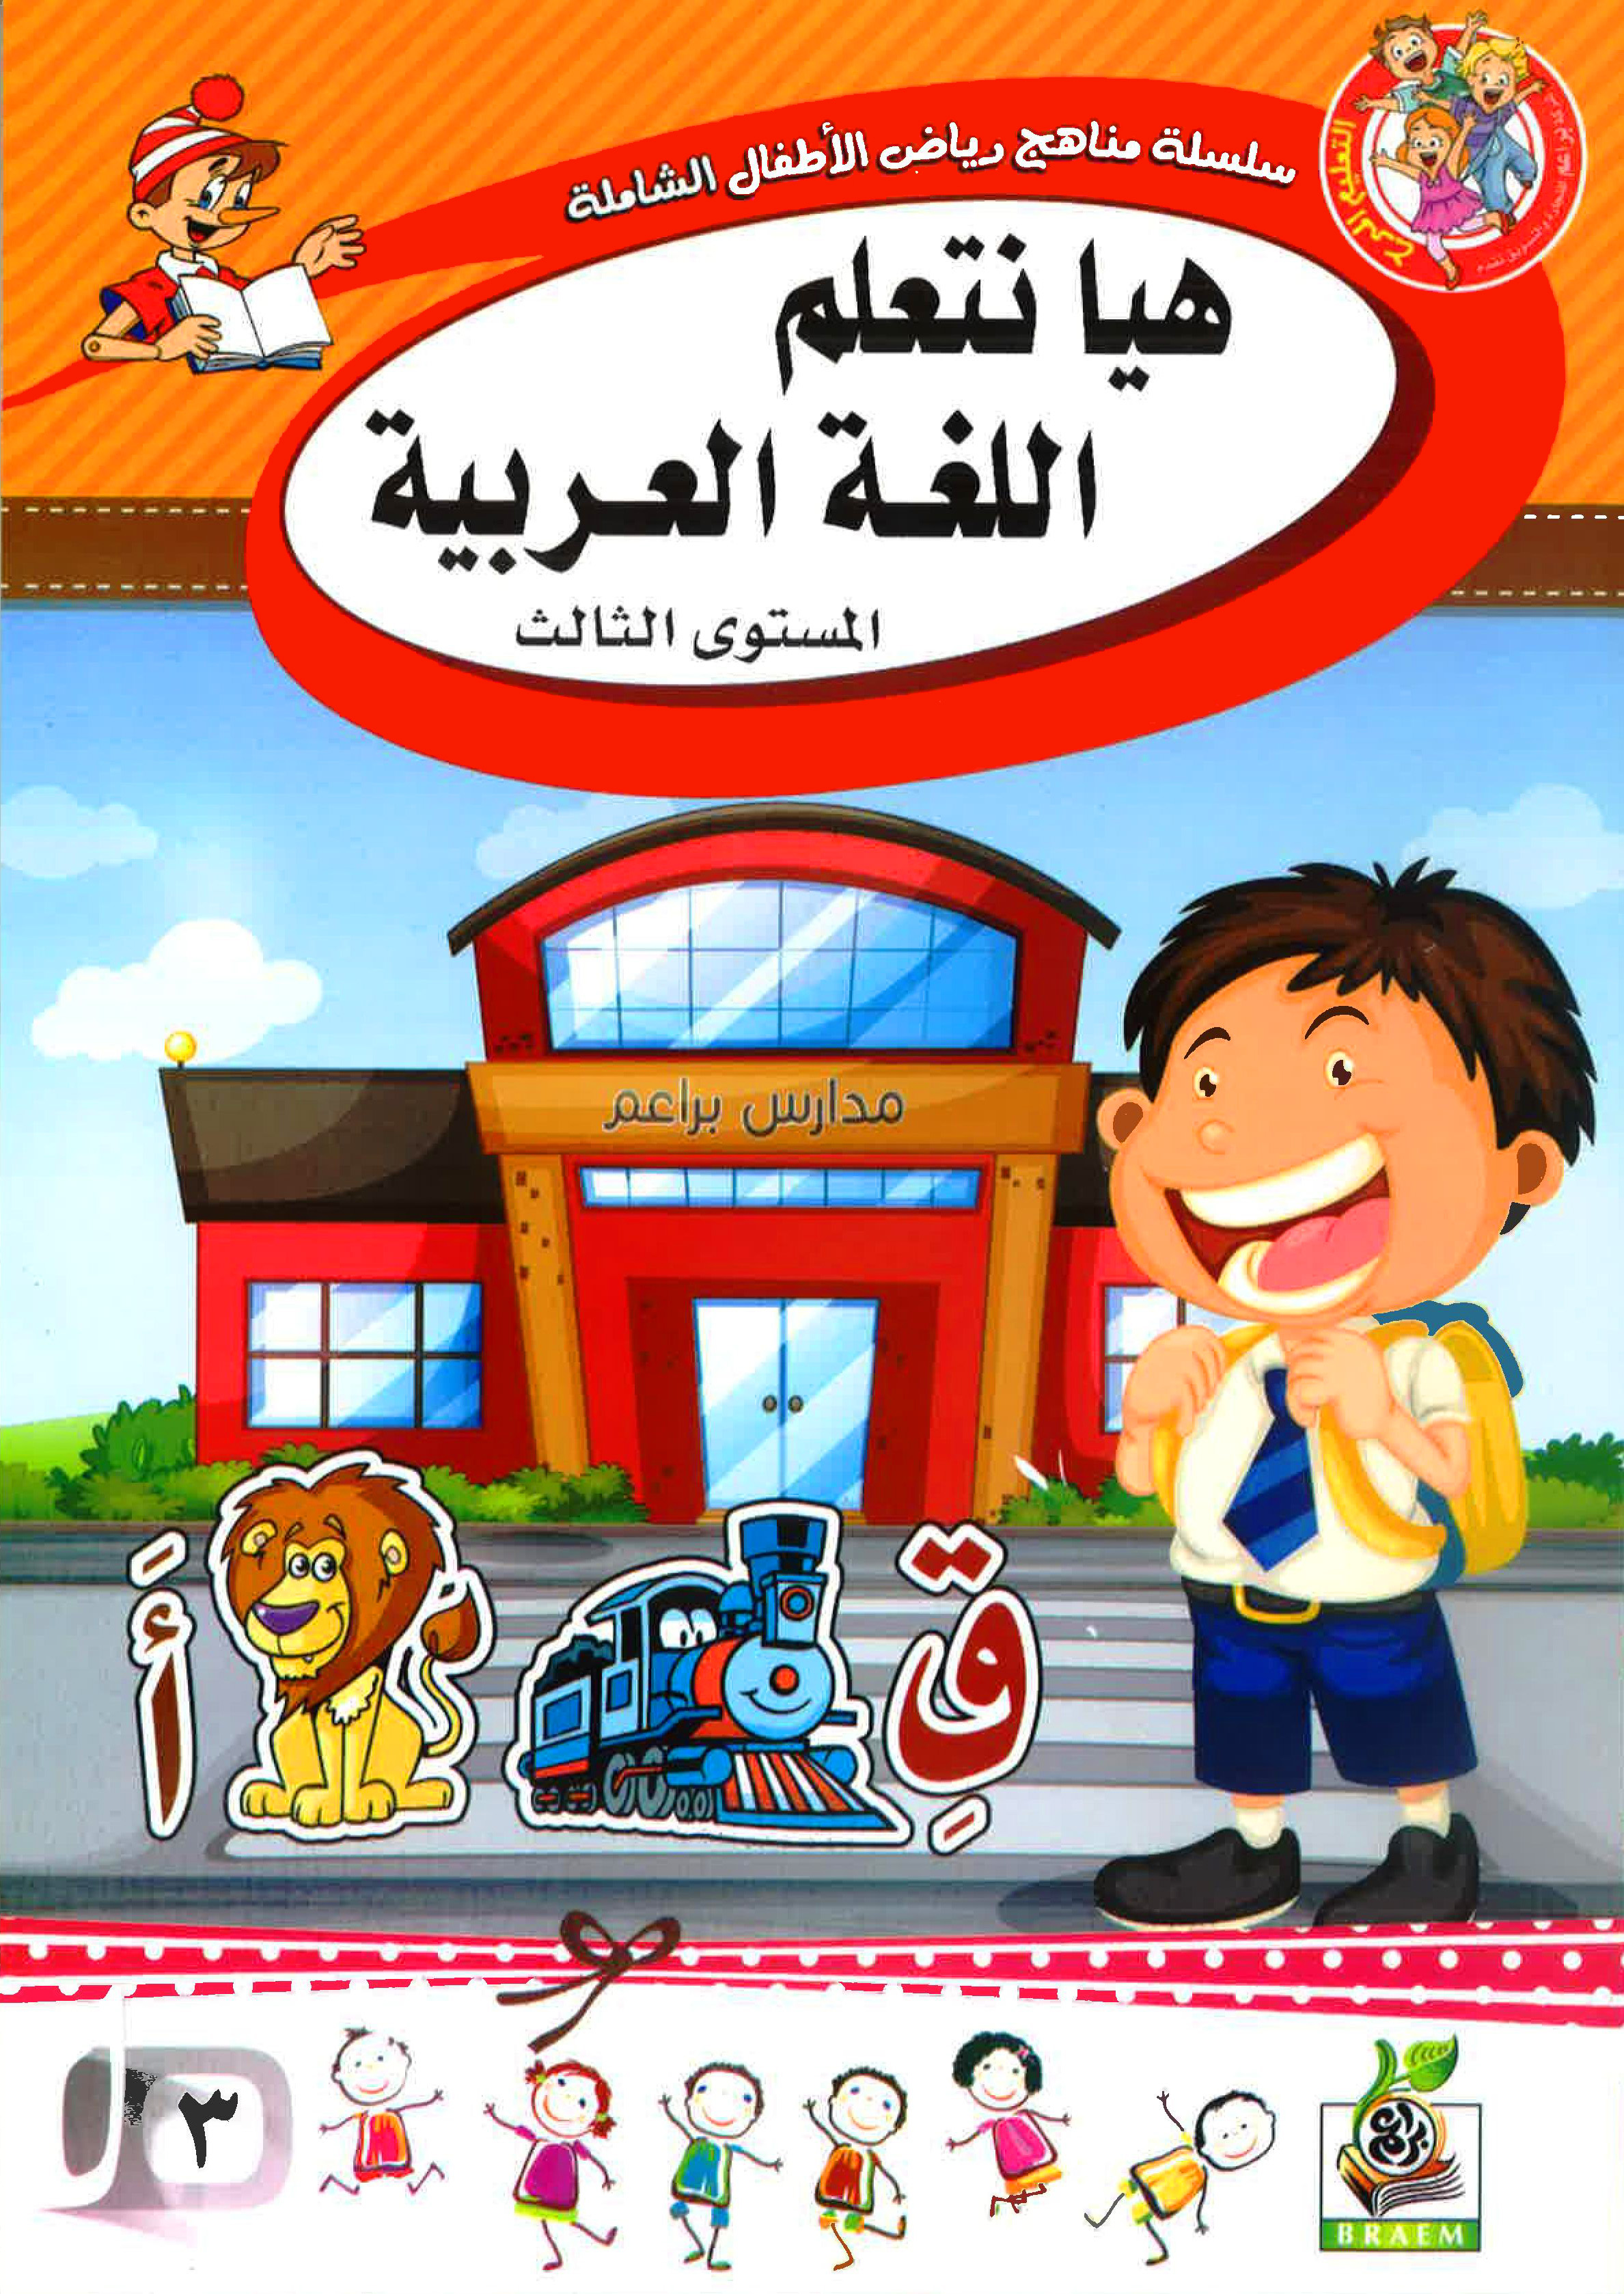 هيا نتعلم اللغة العربية المستوى الثالث